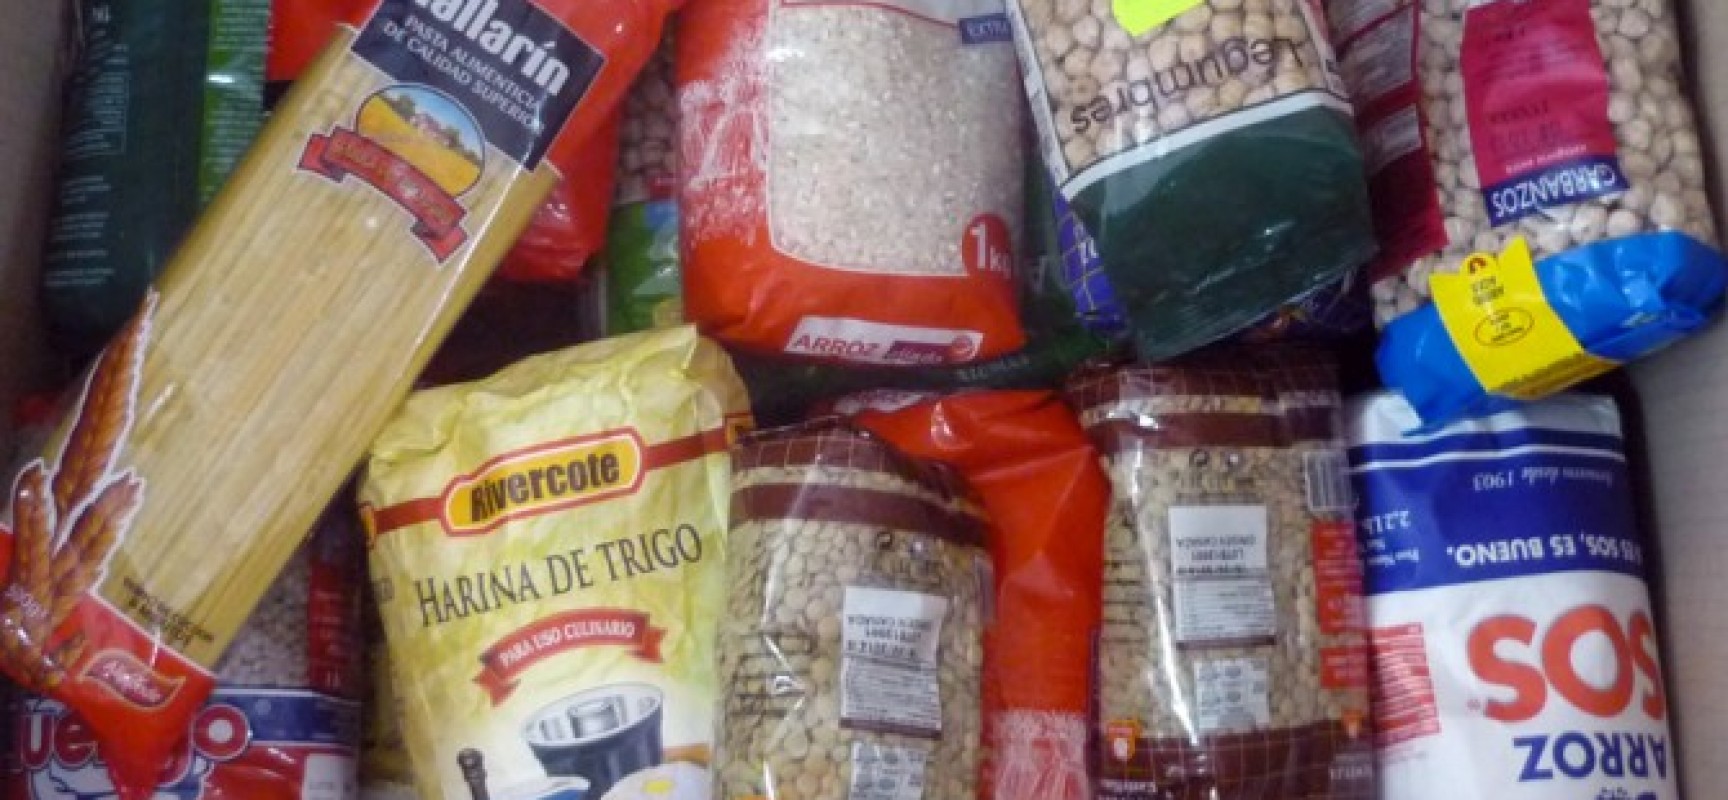 Correos inicia una campaña de recogida de alimentos